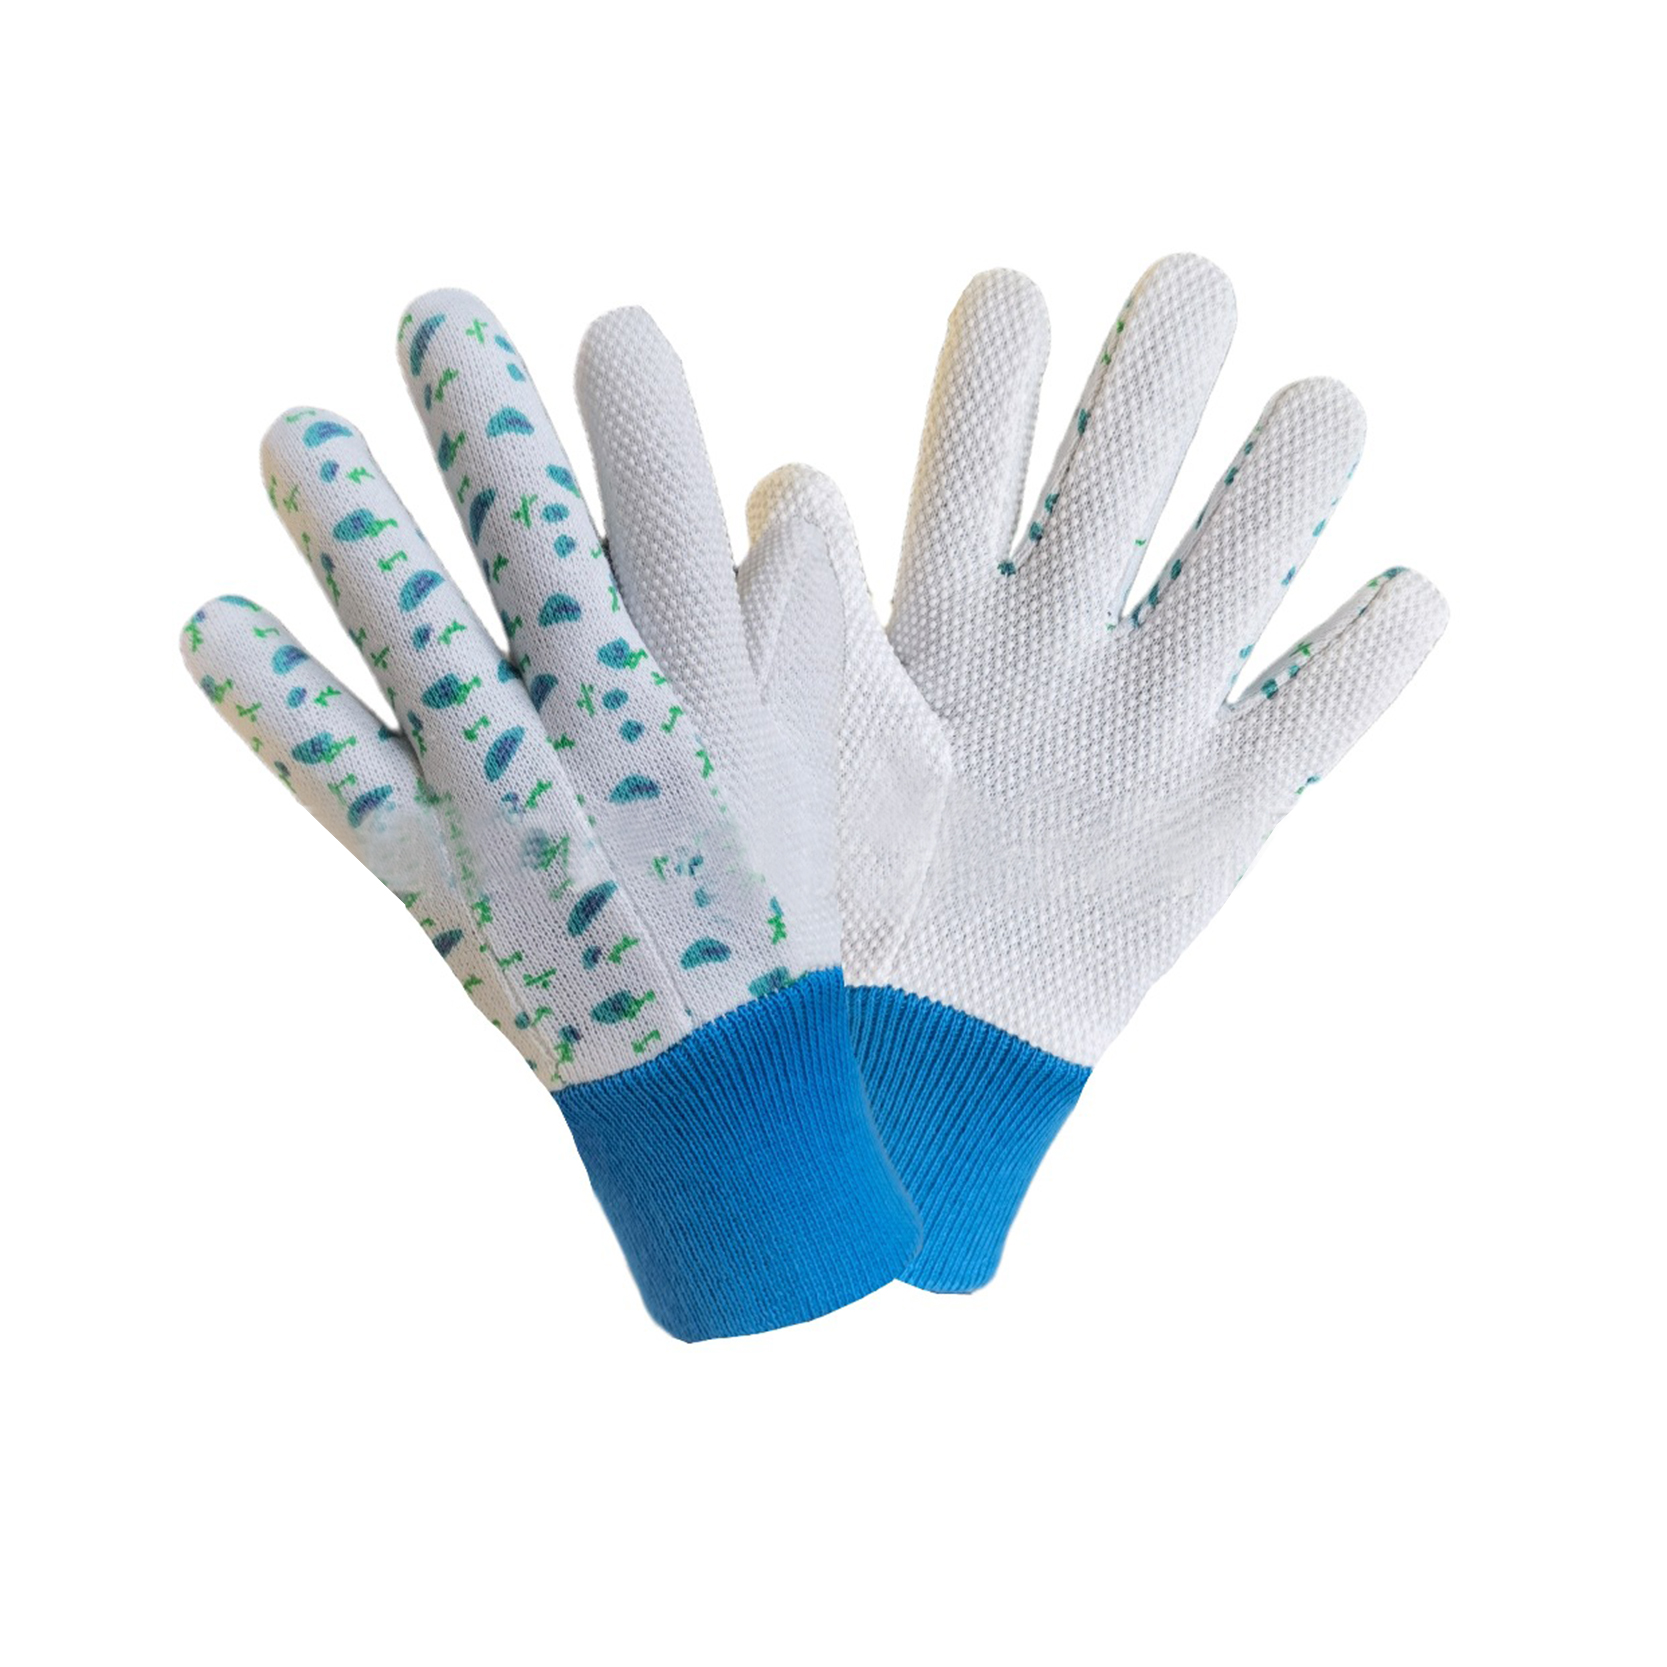 Баштенске радне рукавице са ПВЦ тачкама на длану, цене женских рукавица